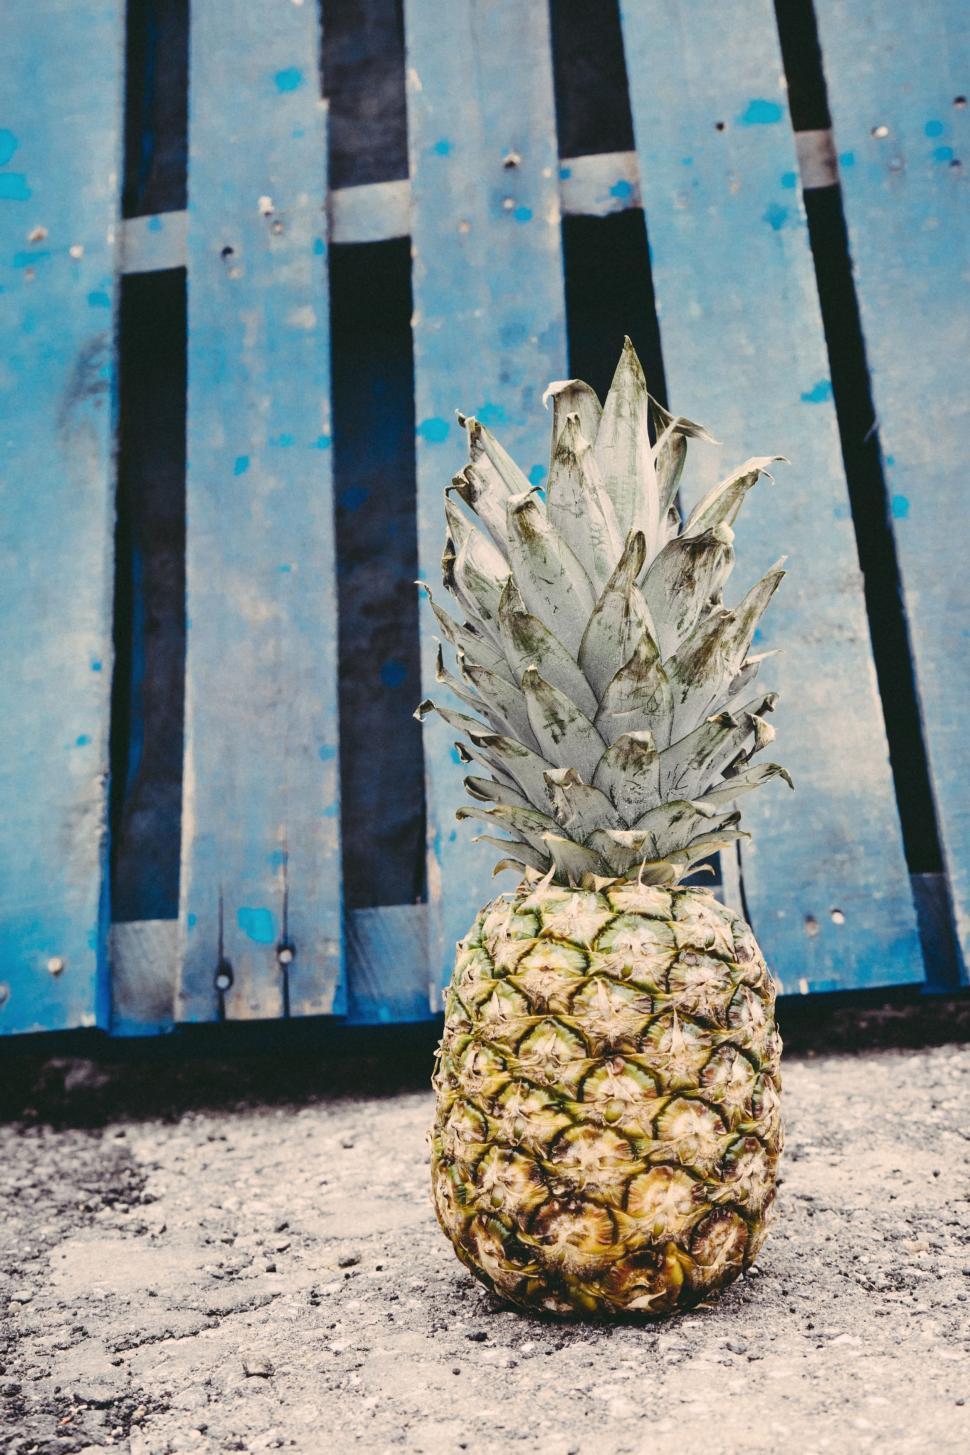 Free Image of Pineapple on asphalt 